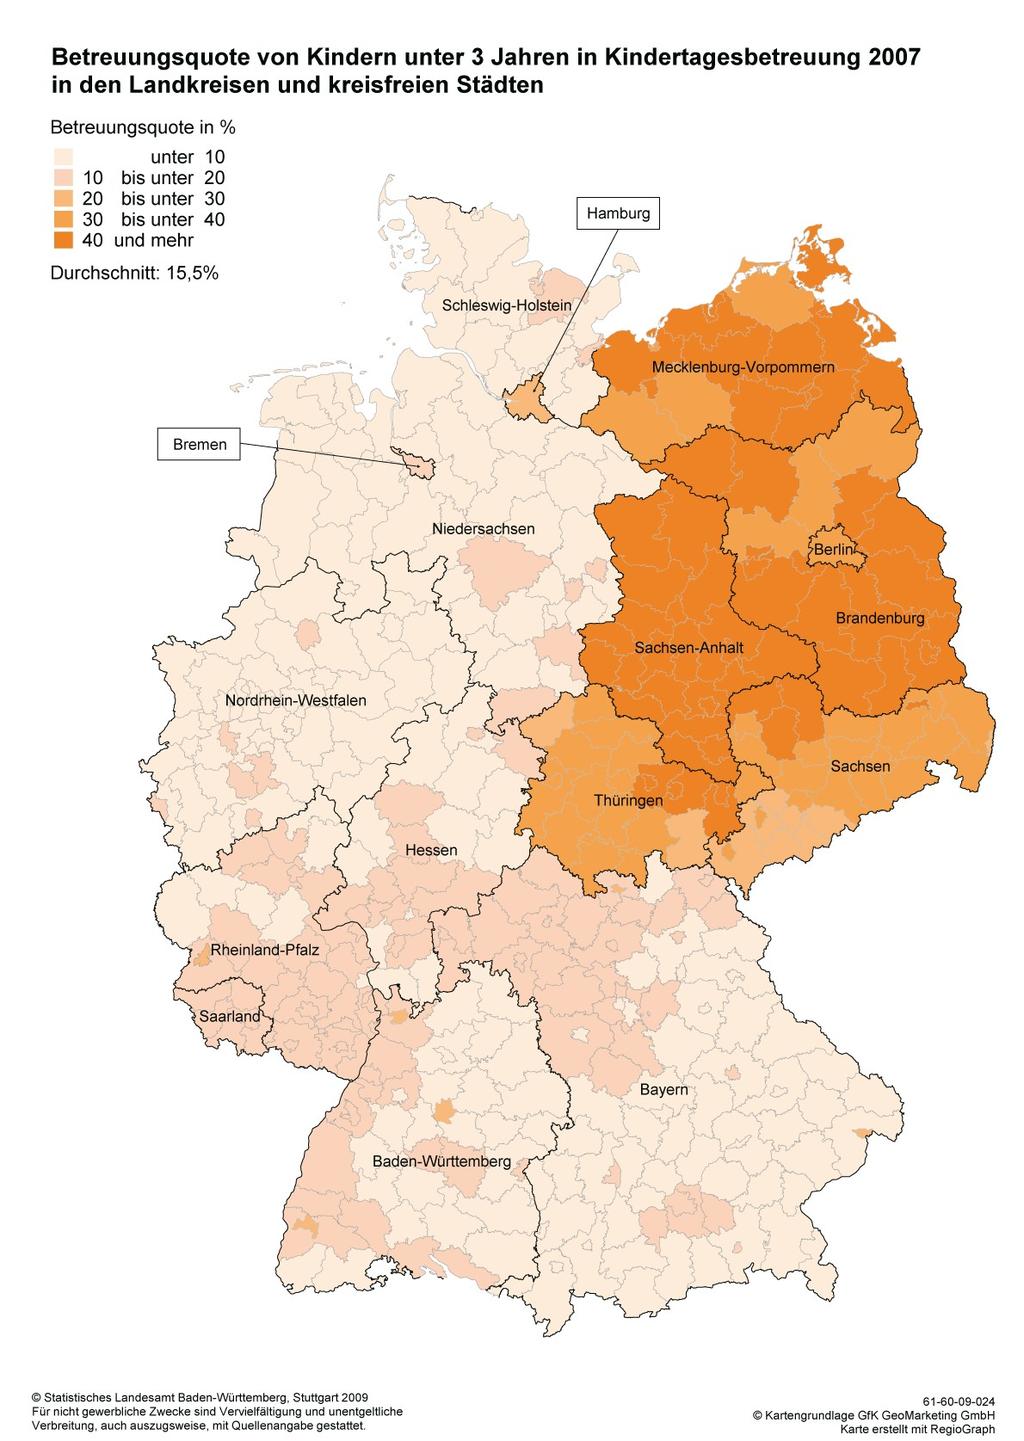 Freiburg: Spitze in Westdeutschland bei der Betreuung unter